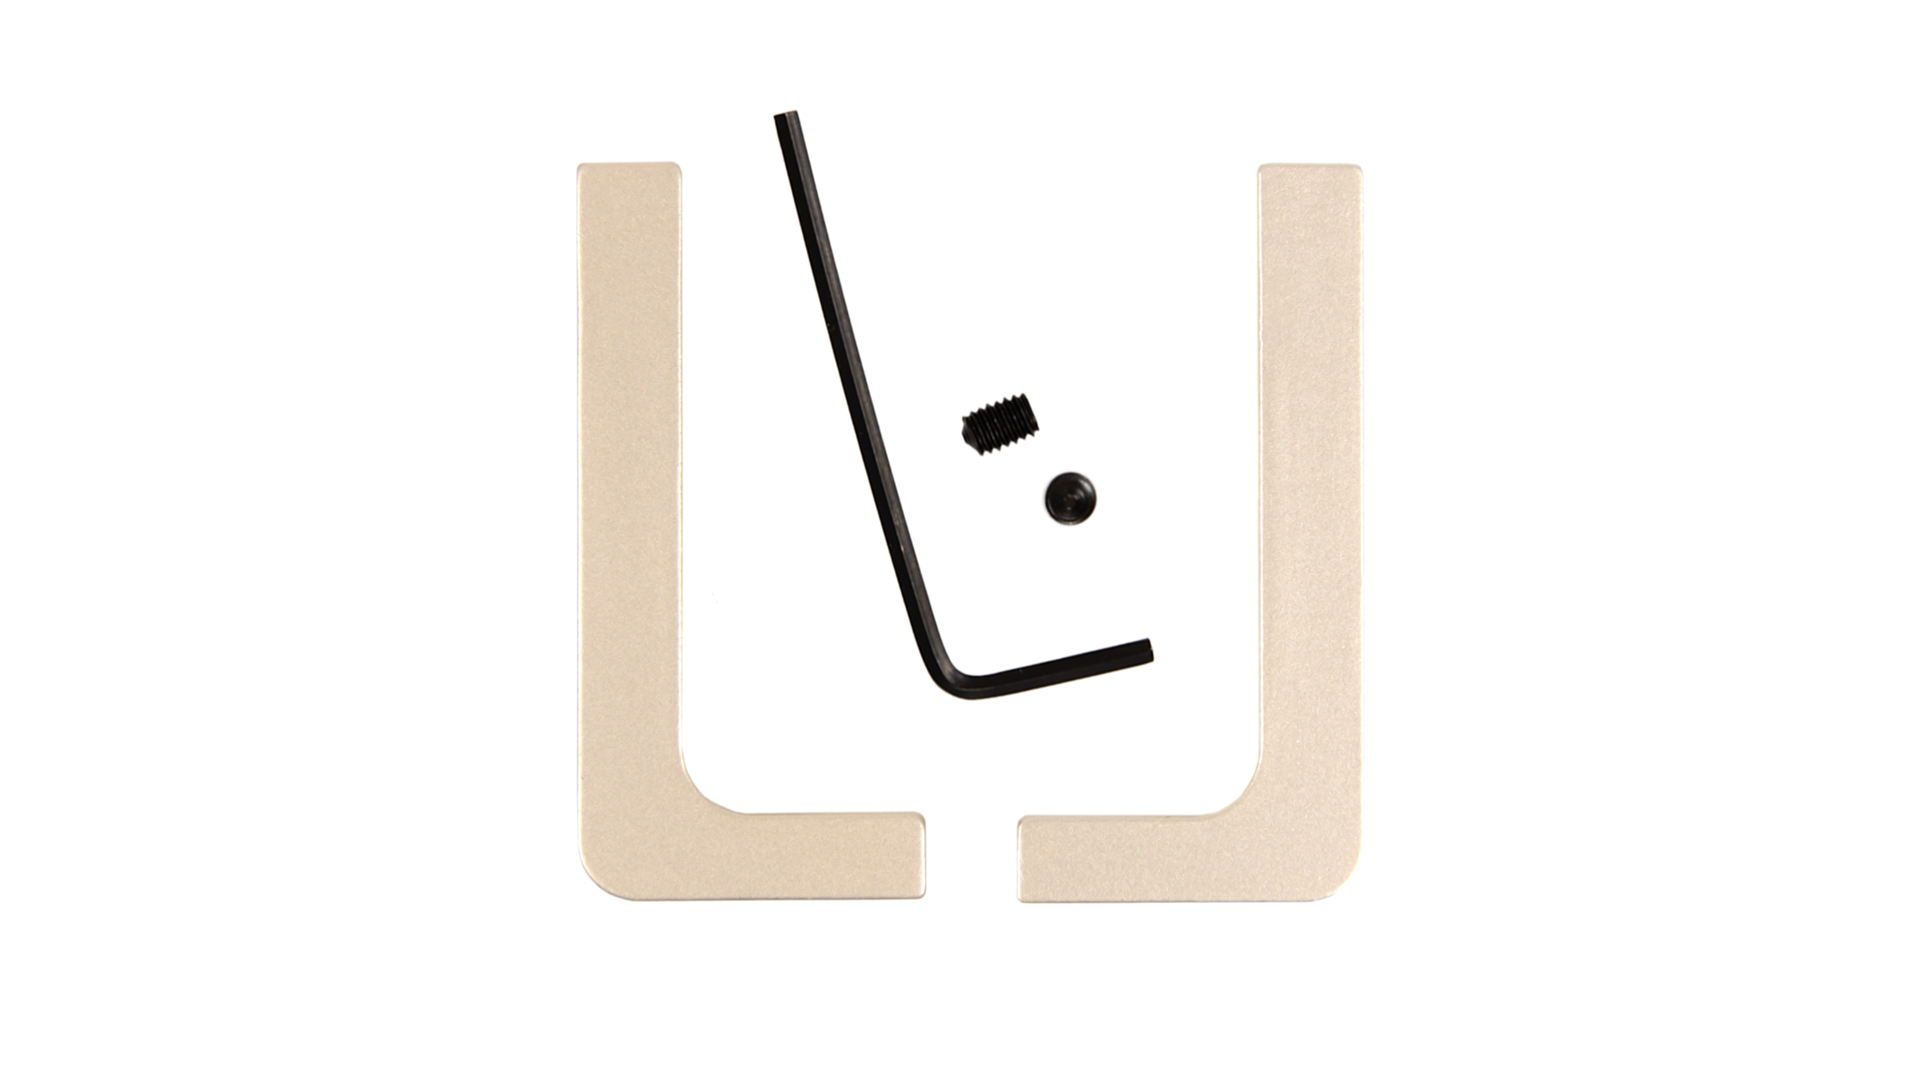 Комплект заглушек для Г-образного профиля Gola Balance золото матовое RZ051.01SG Boyard / 719996-15 / оптом и в розницу / мебельная фурнитура "ЛАВР"